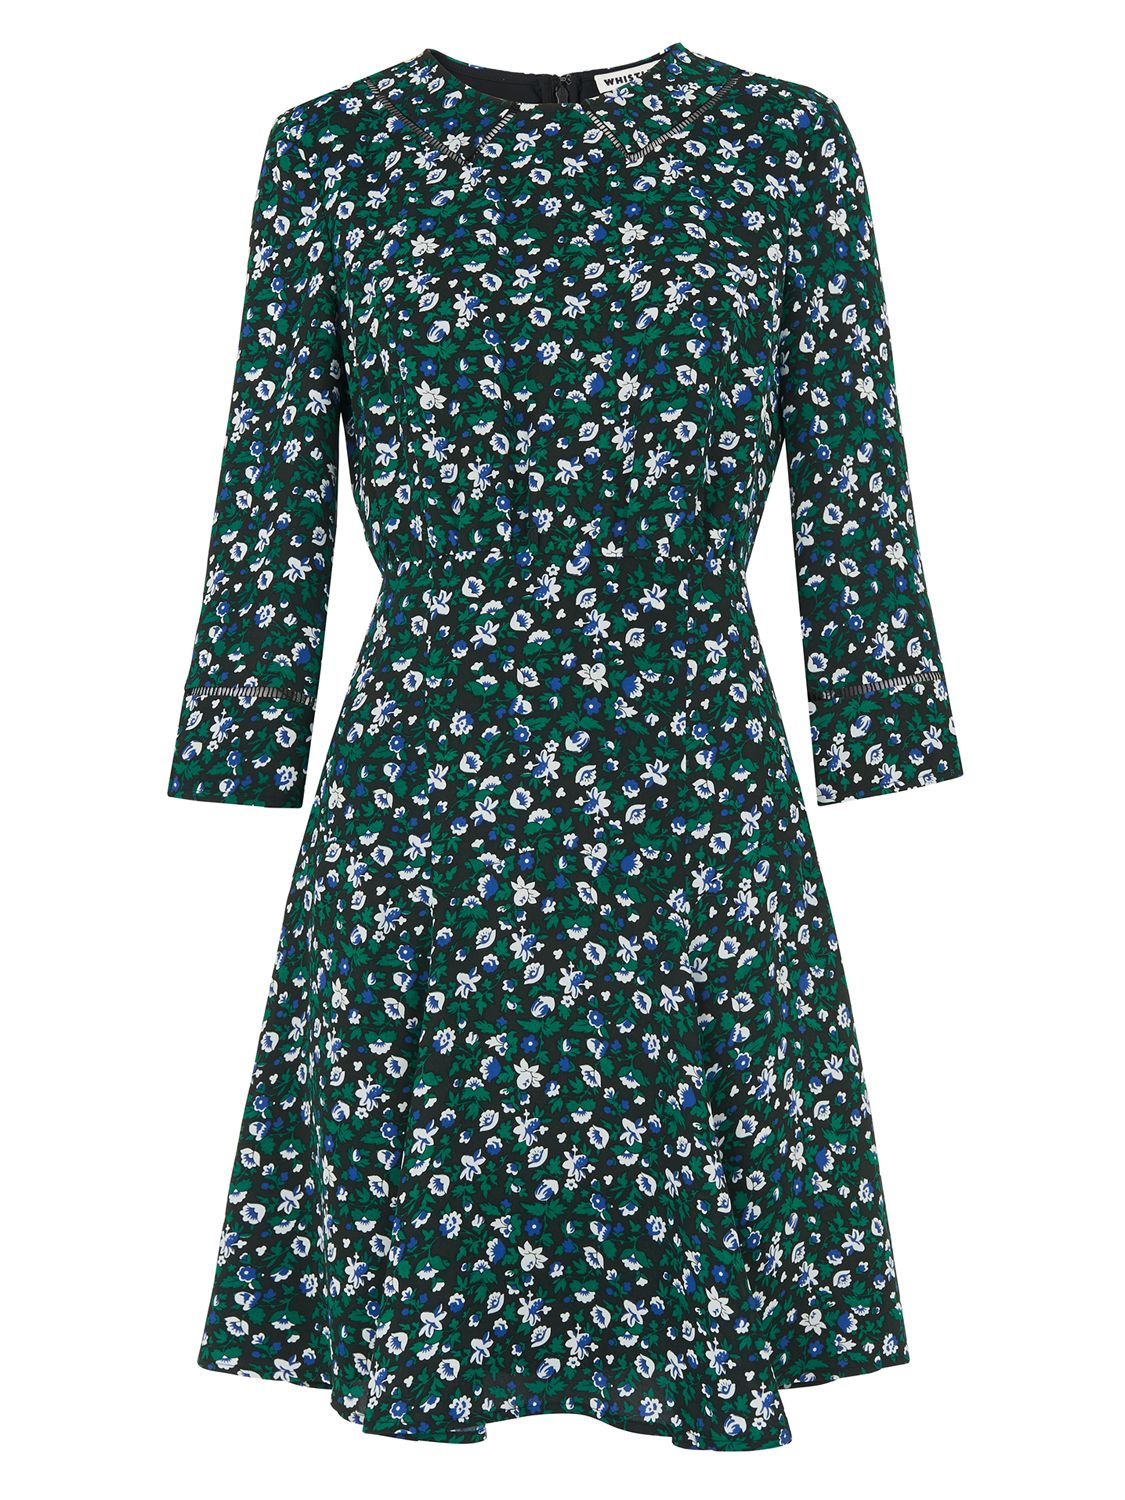 Whistles Francis Bell Flower Dress, Green/Multi